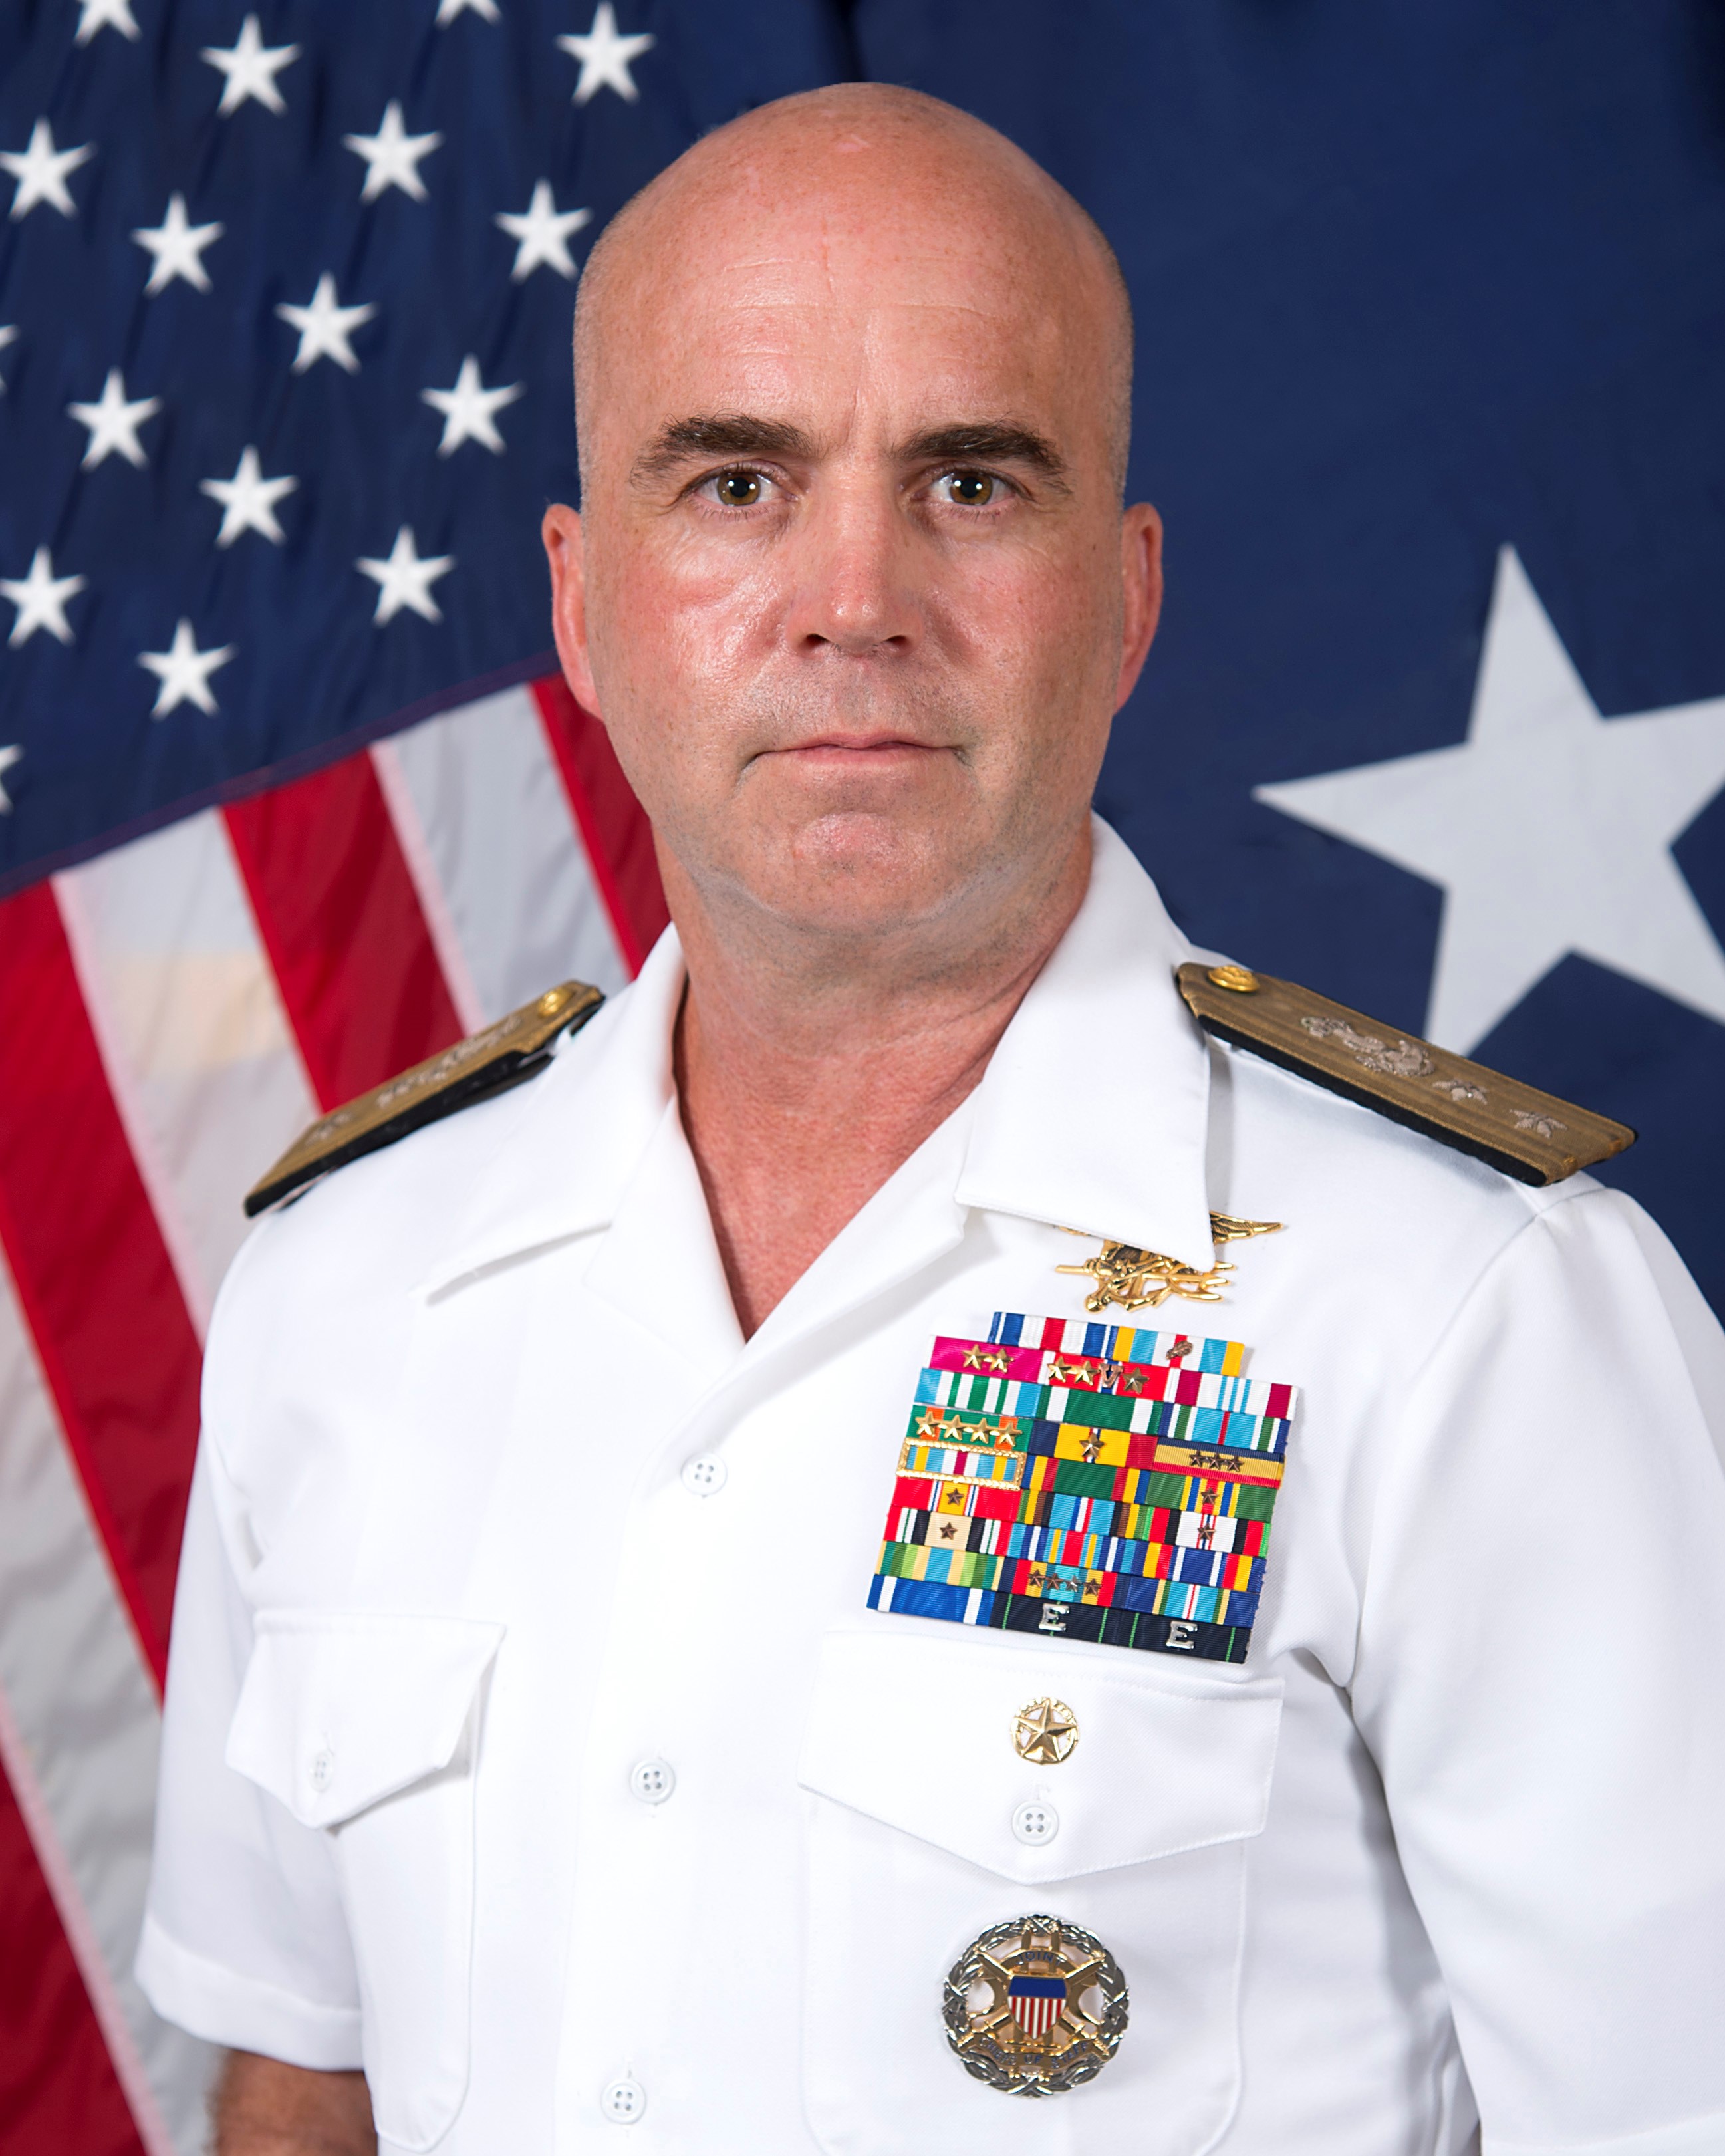 Navy Seal Officer Uniform